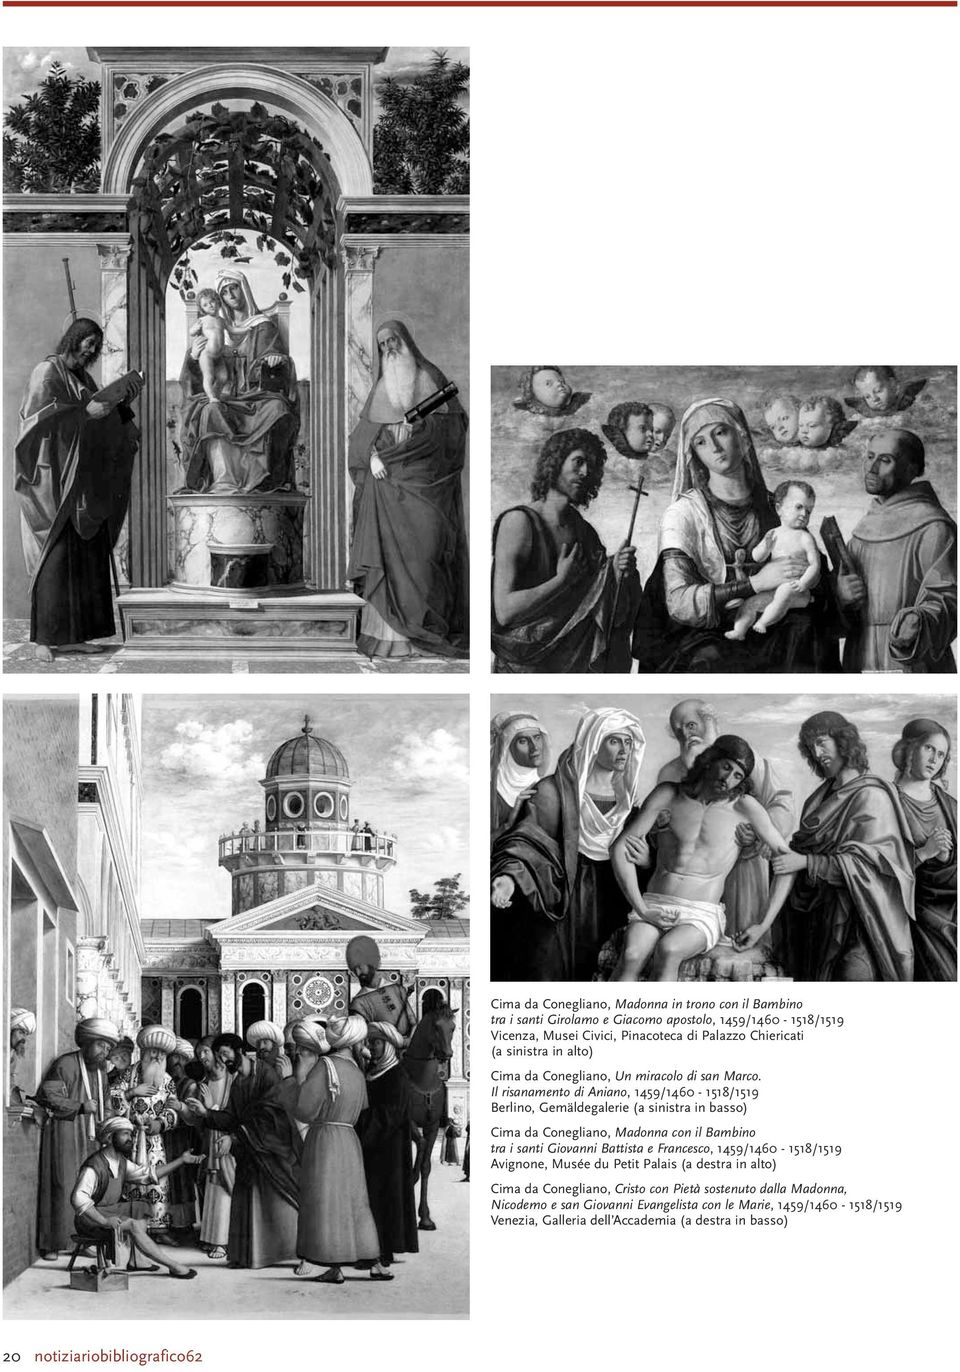 Il risanamento di Aniano, 1459/1460-1518/1519 Berlino, Gemäldegalerie (a sinistra in basso) Cima da Conegliano, Madonna con il Bambino tra i santi Giovanni Battista e